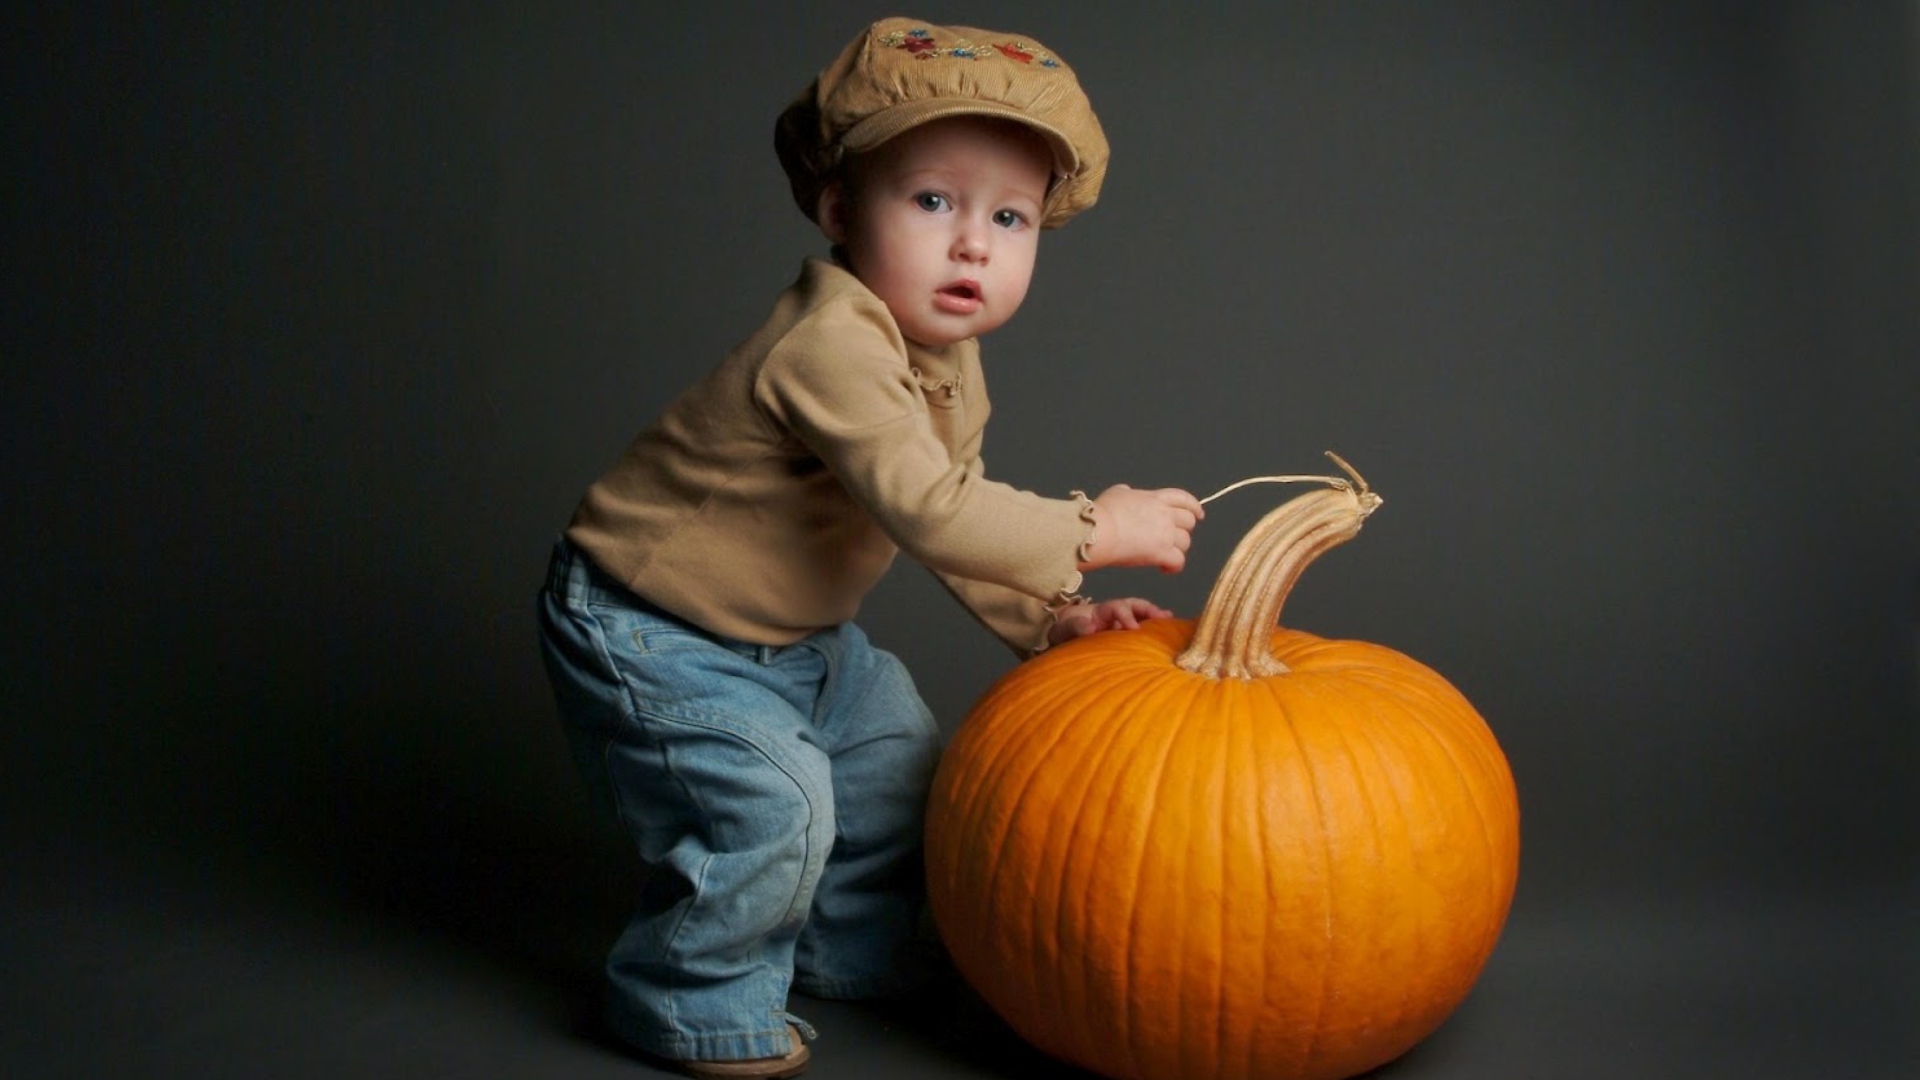 Обои Cute Baby With Pumpkin 1920x1080